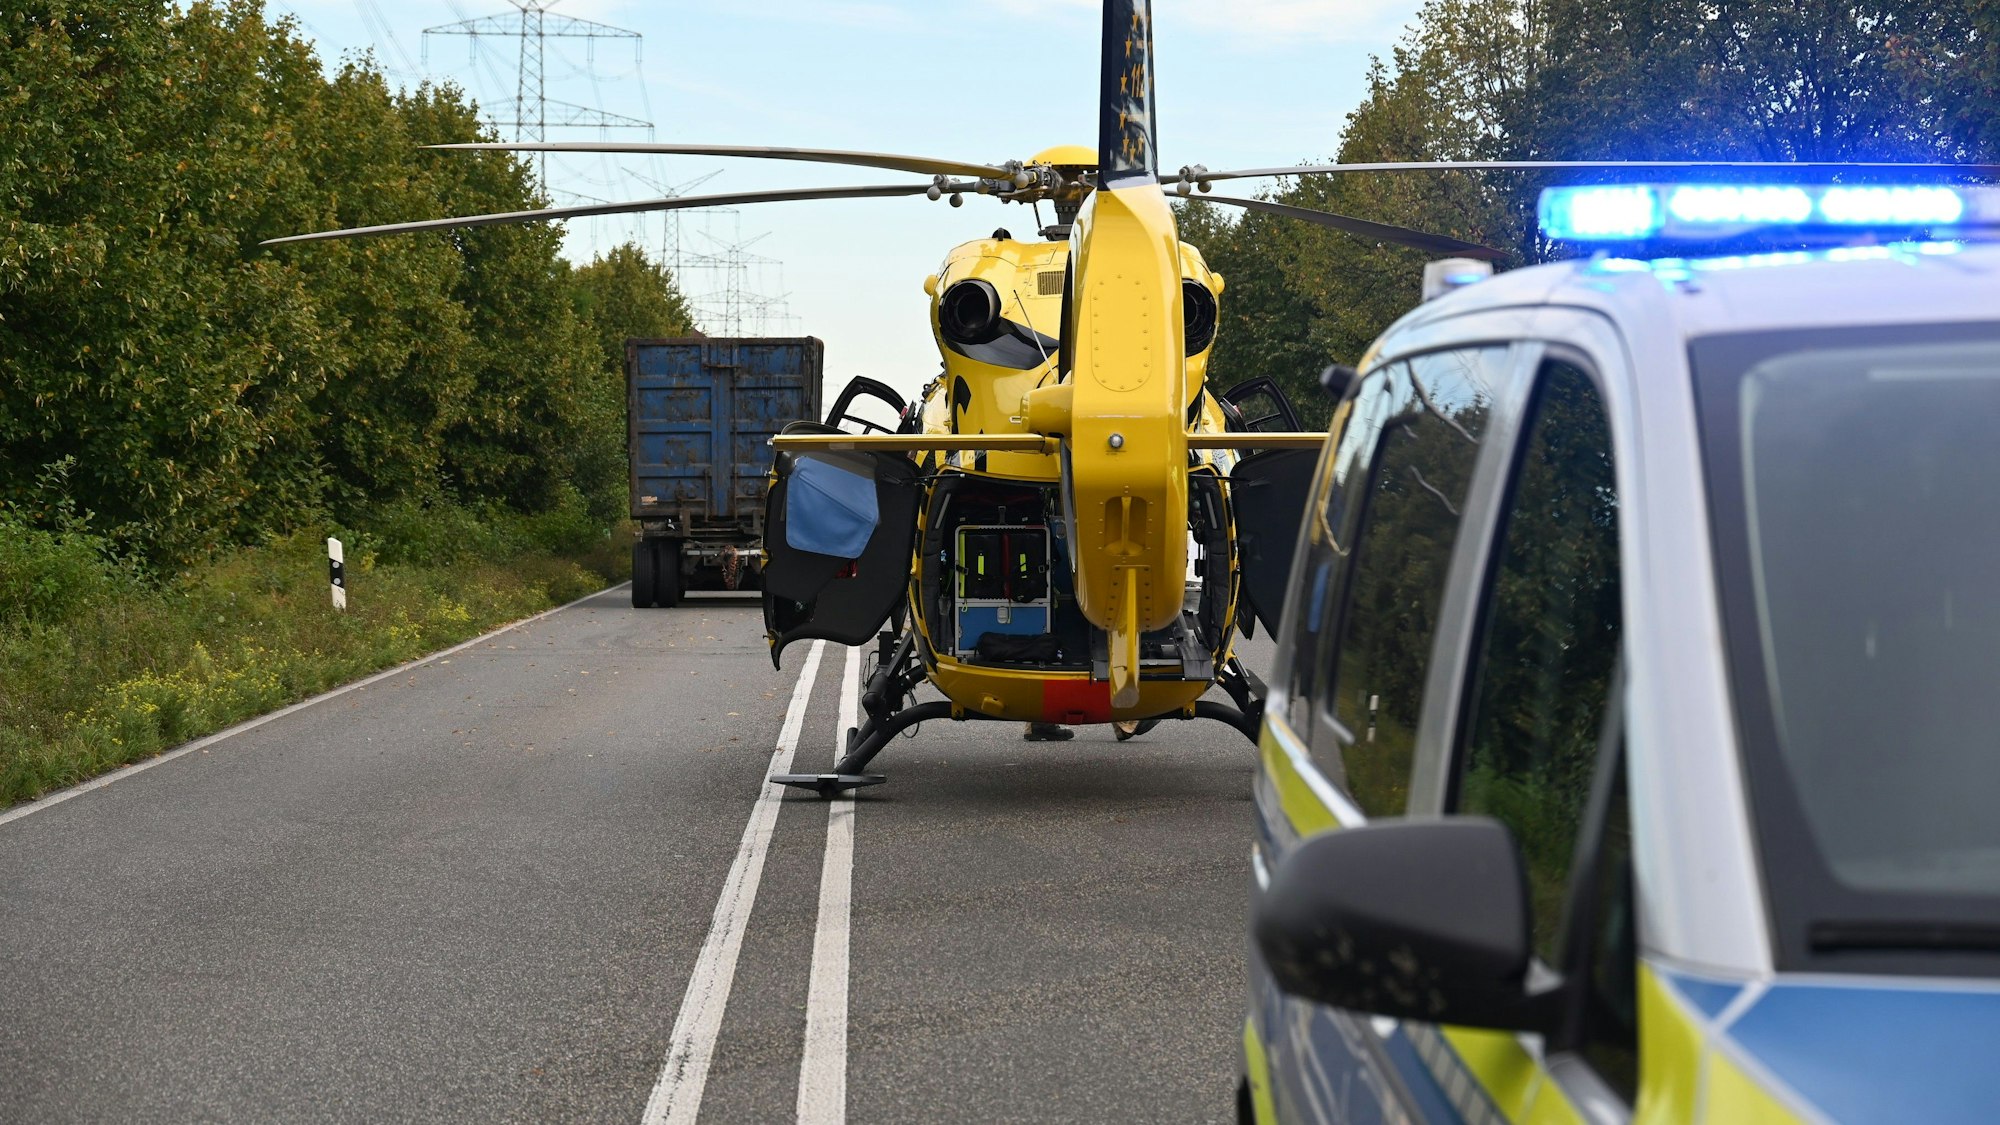 Auf dem Foto sind ein gelber Rettungshubschrauber, ein Einsatzfahrzeug der Polizei und im Hintergrund ein Lkw auf der B 59 zu sehen.